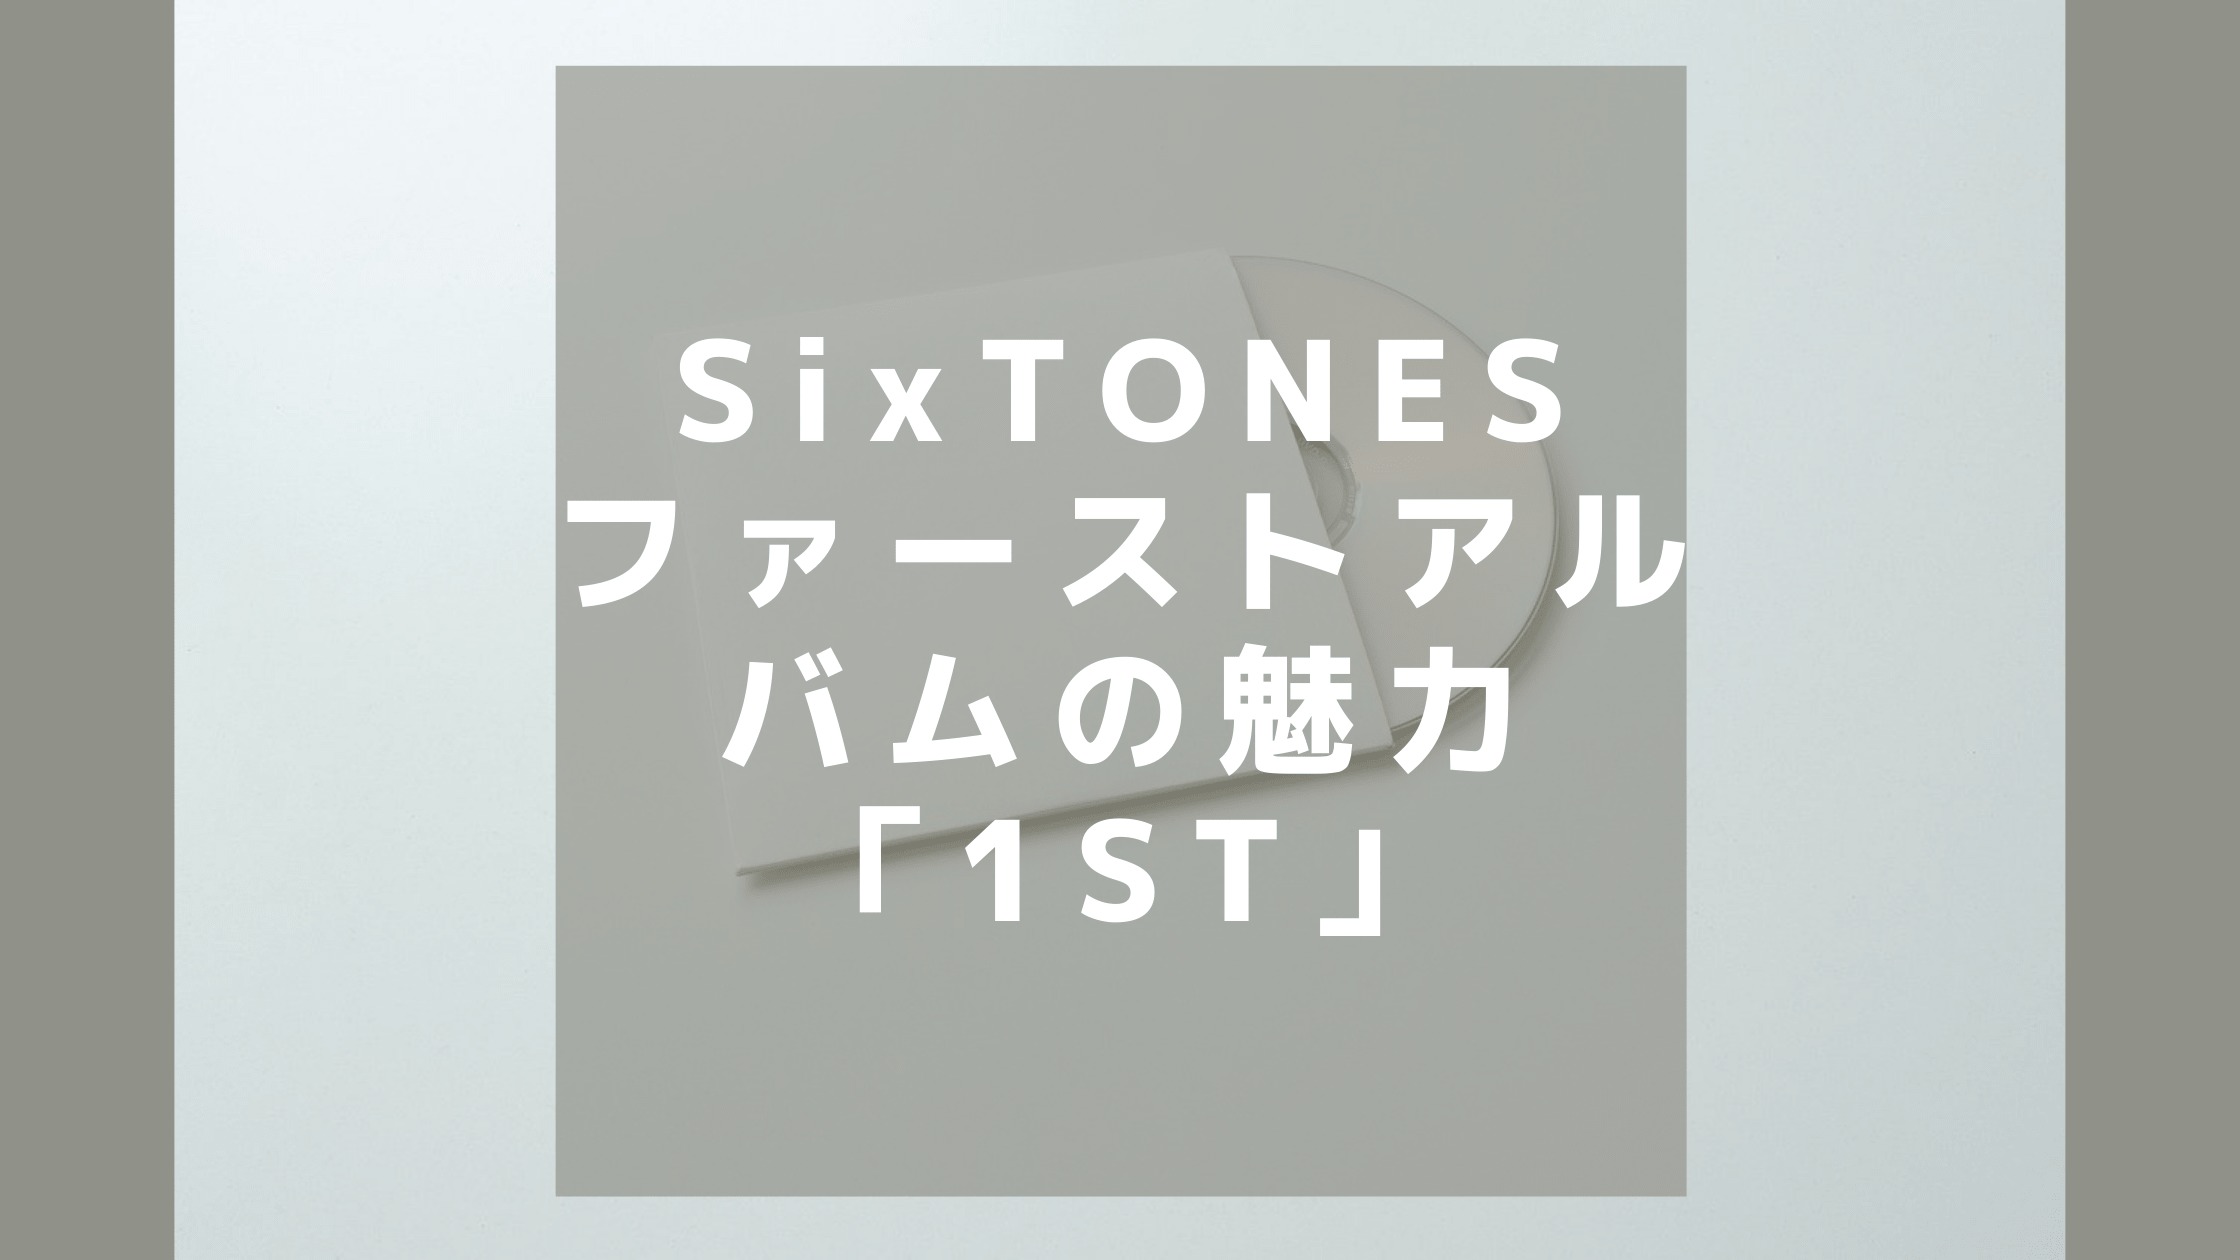 SixTONES】ファーストアルバム「1ST」の魅力と購入方法 | しいぶろ